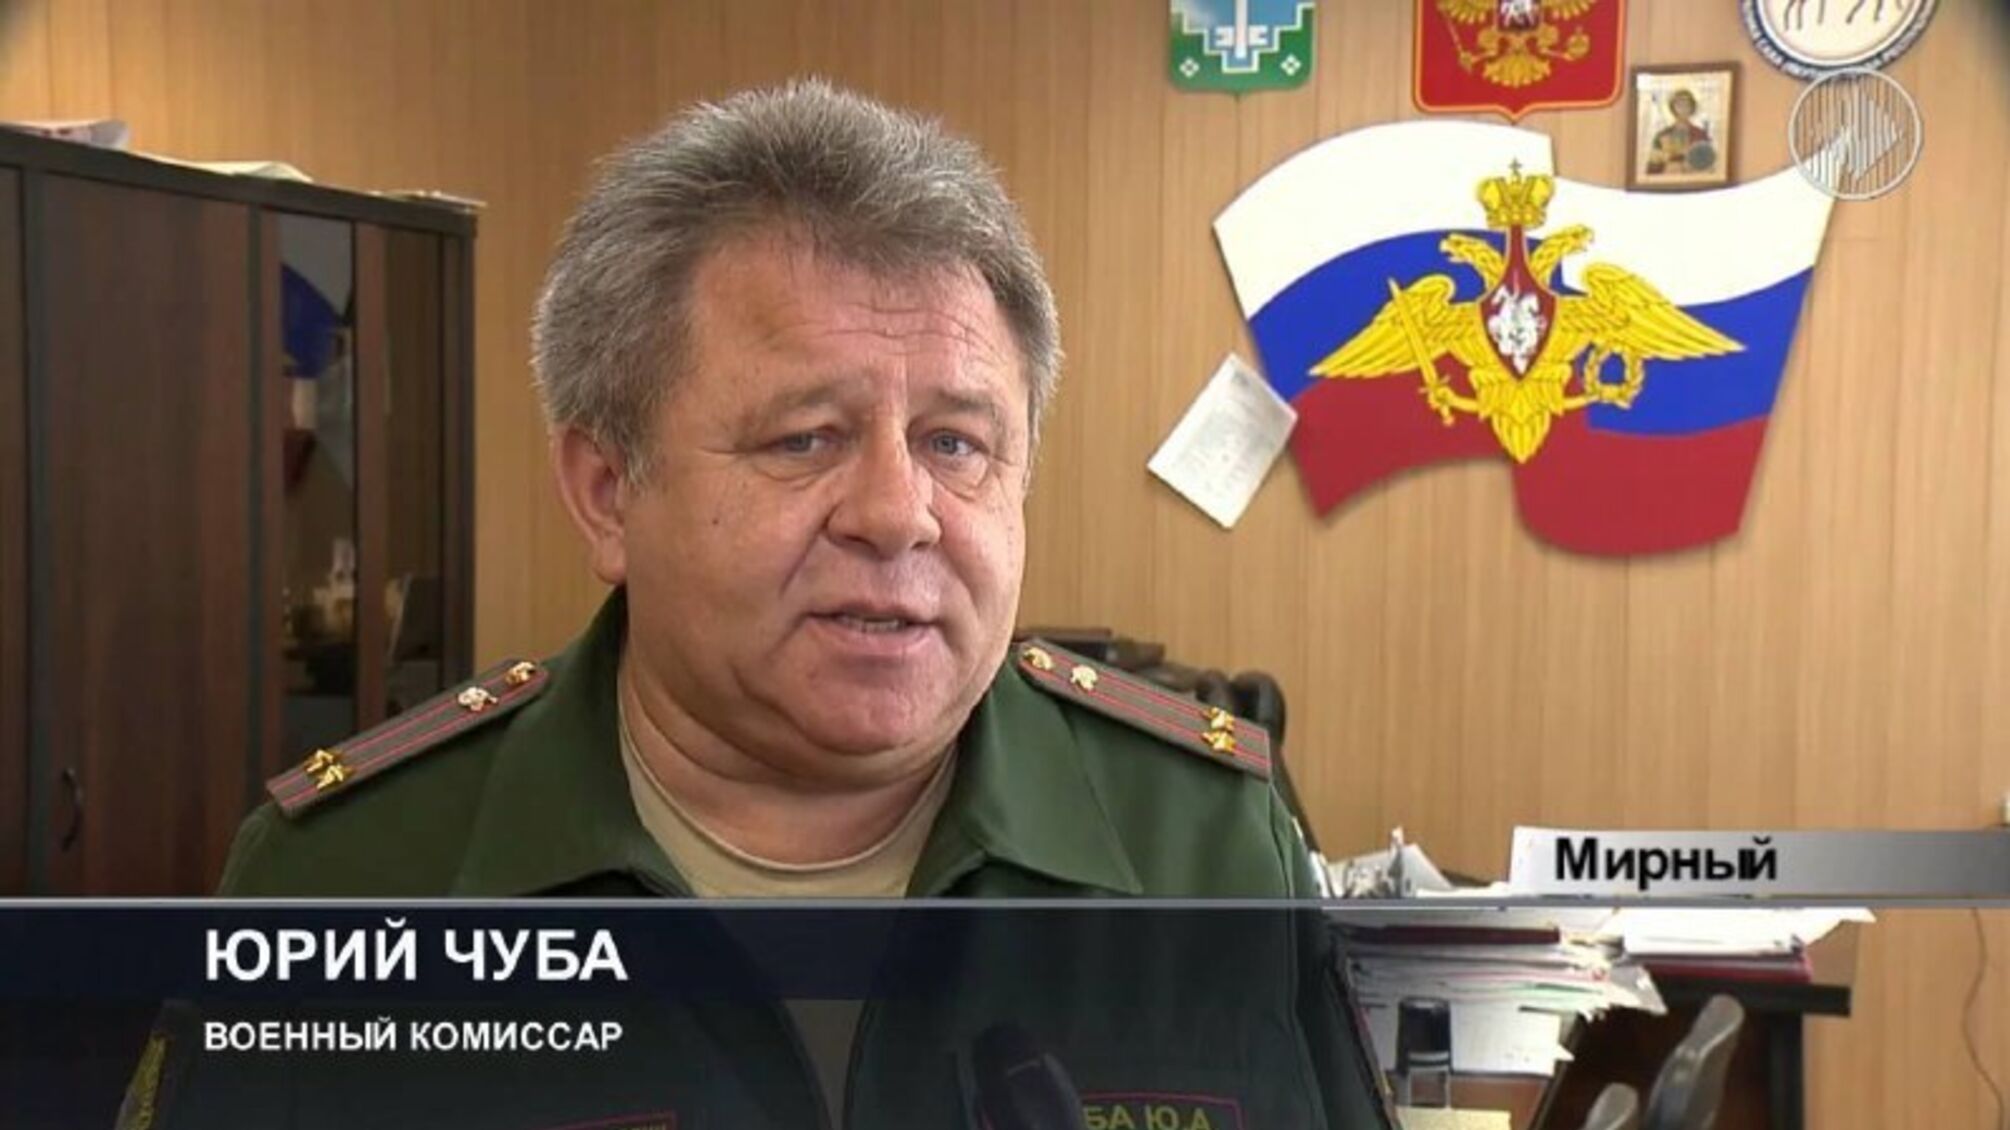 Отбыл штраф: в Якутии комиссар 'заминировал' собственный военкомат